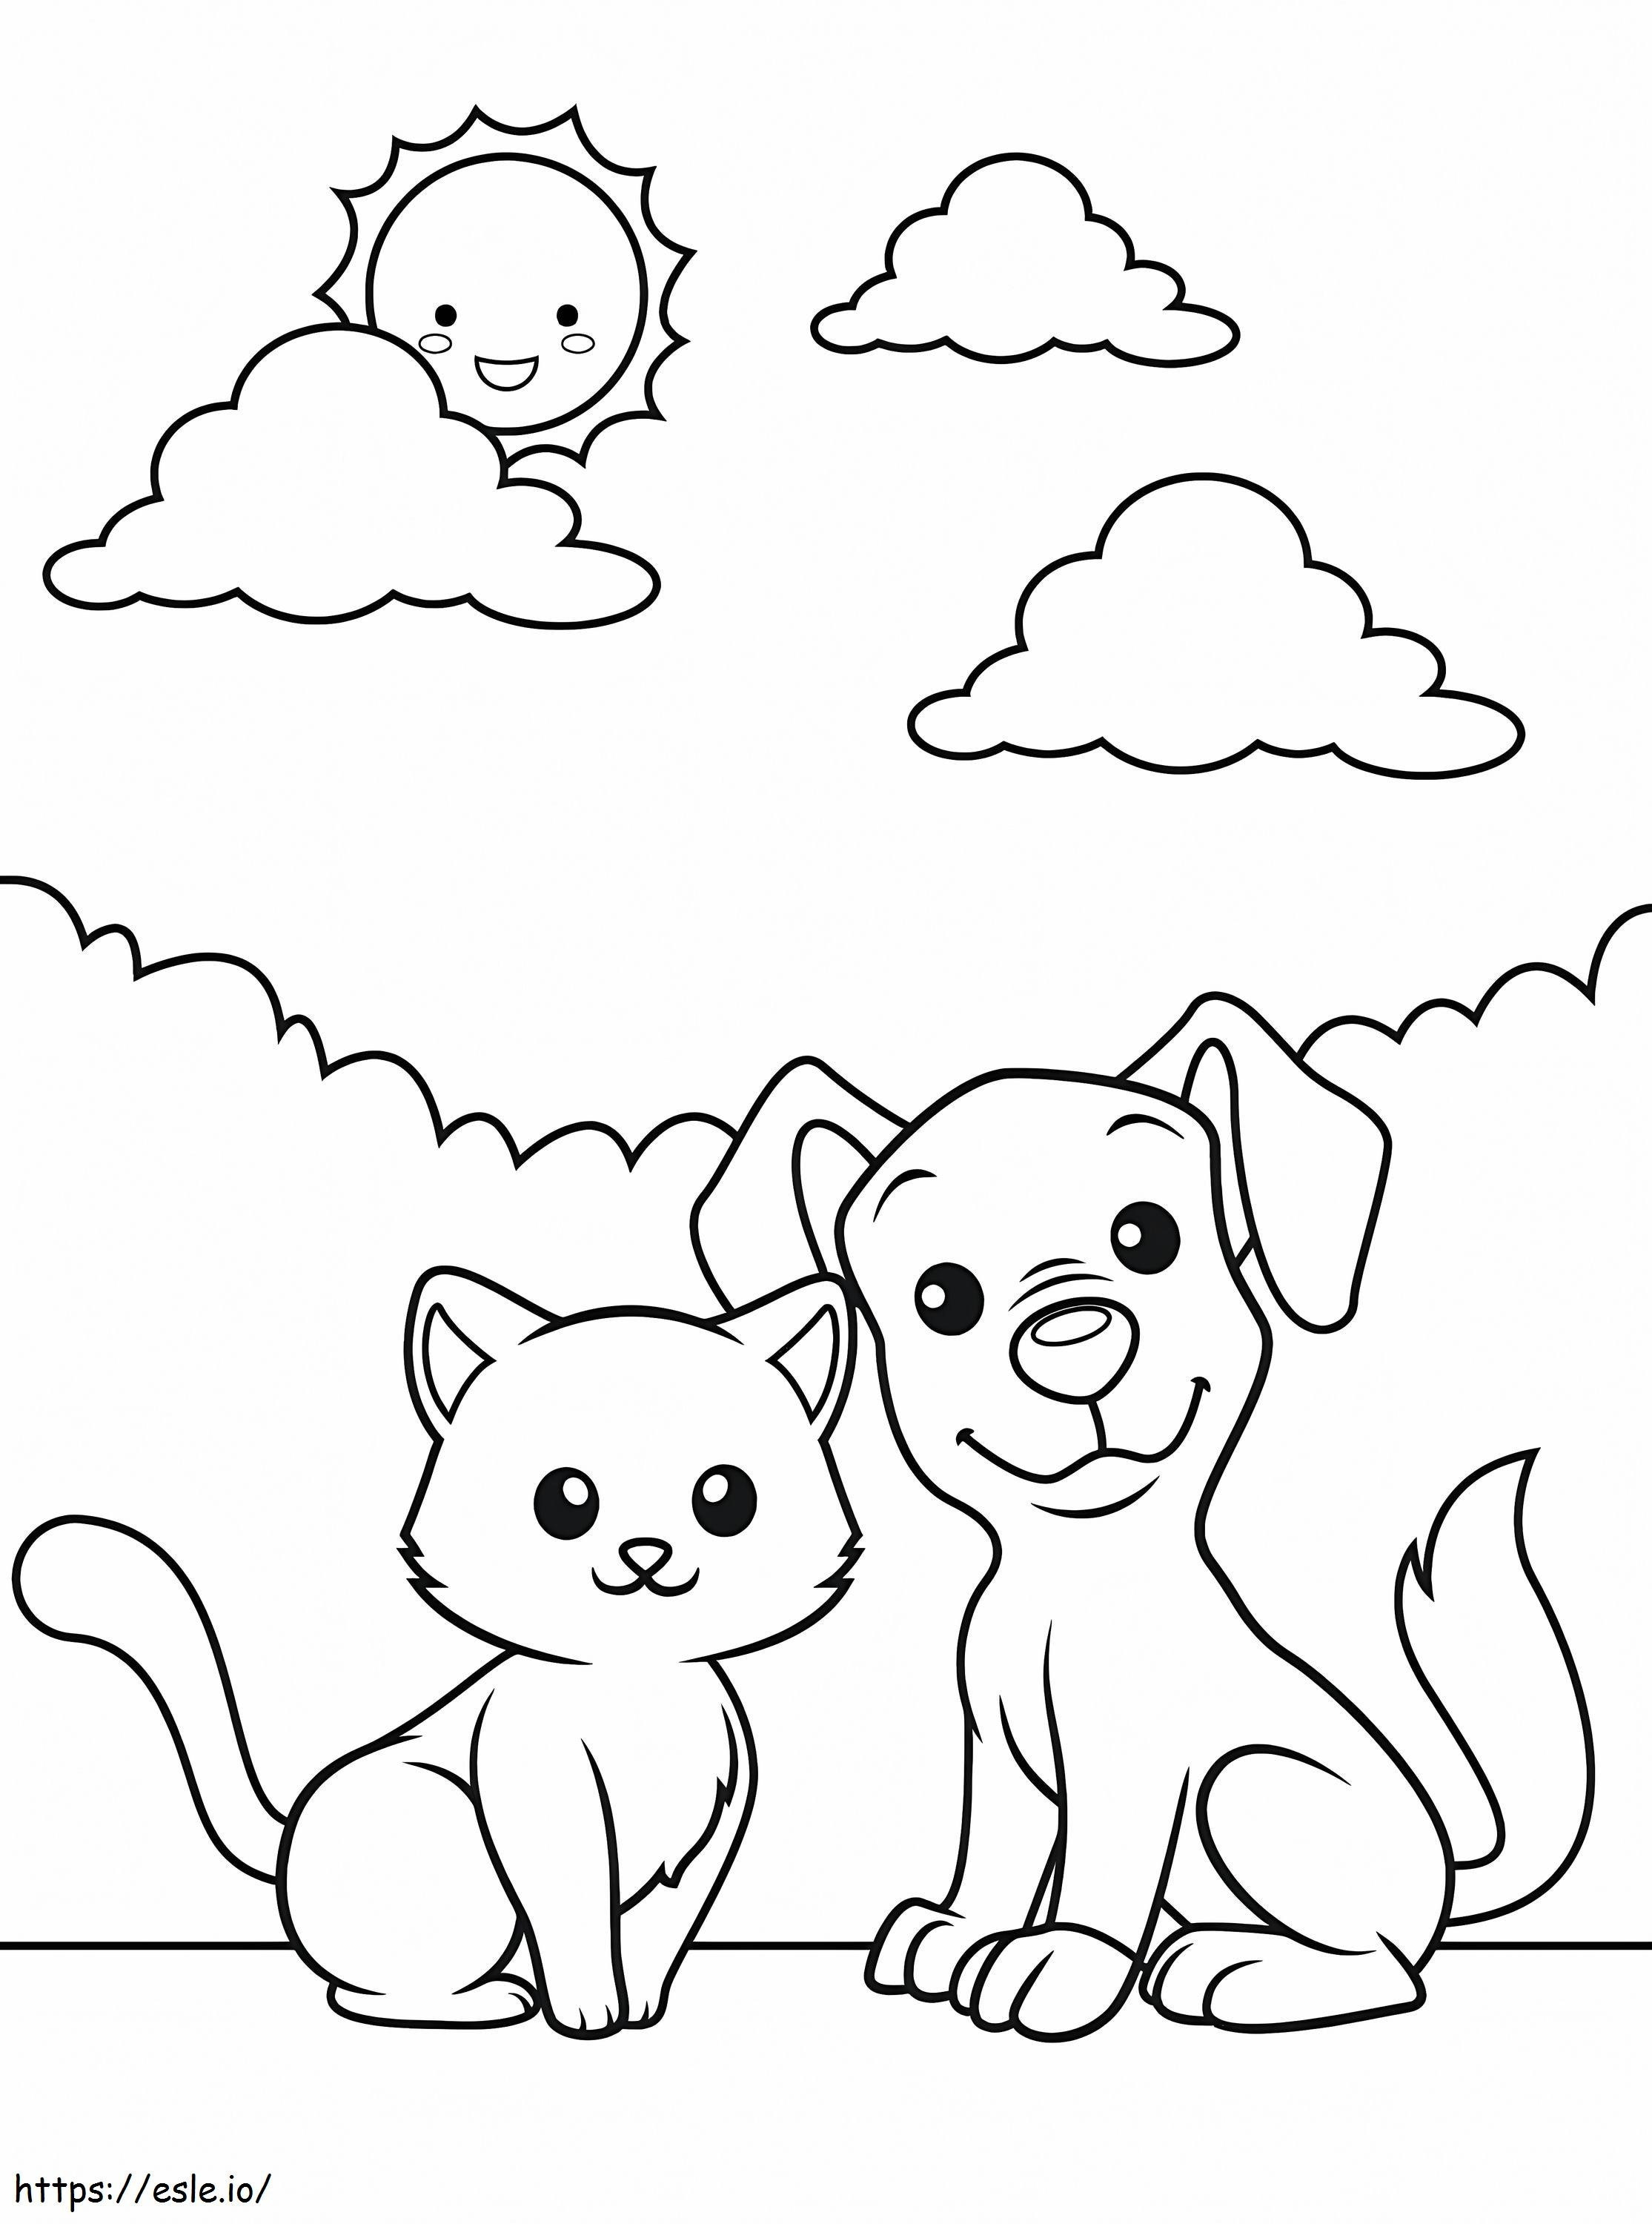 Perro y gato para colorear